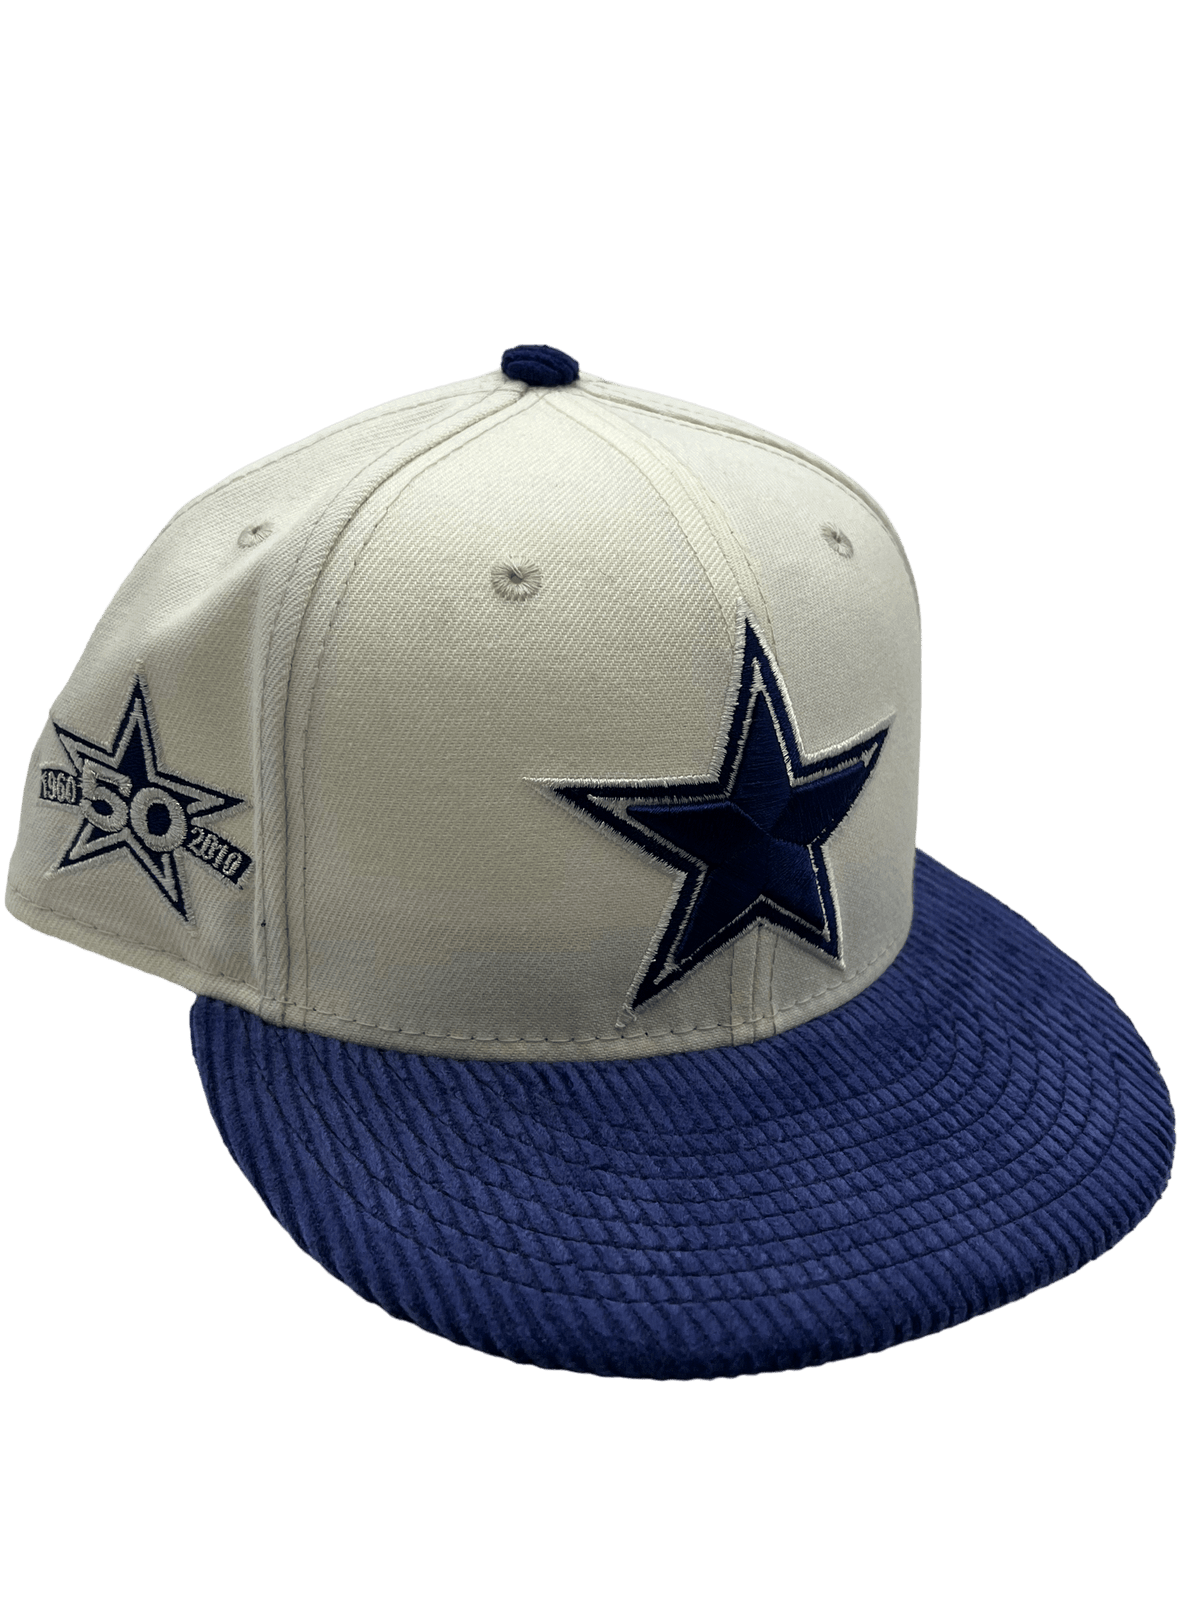 dallas cowboys new era 1960 hat